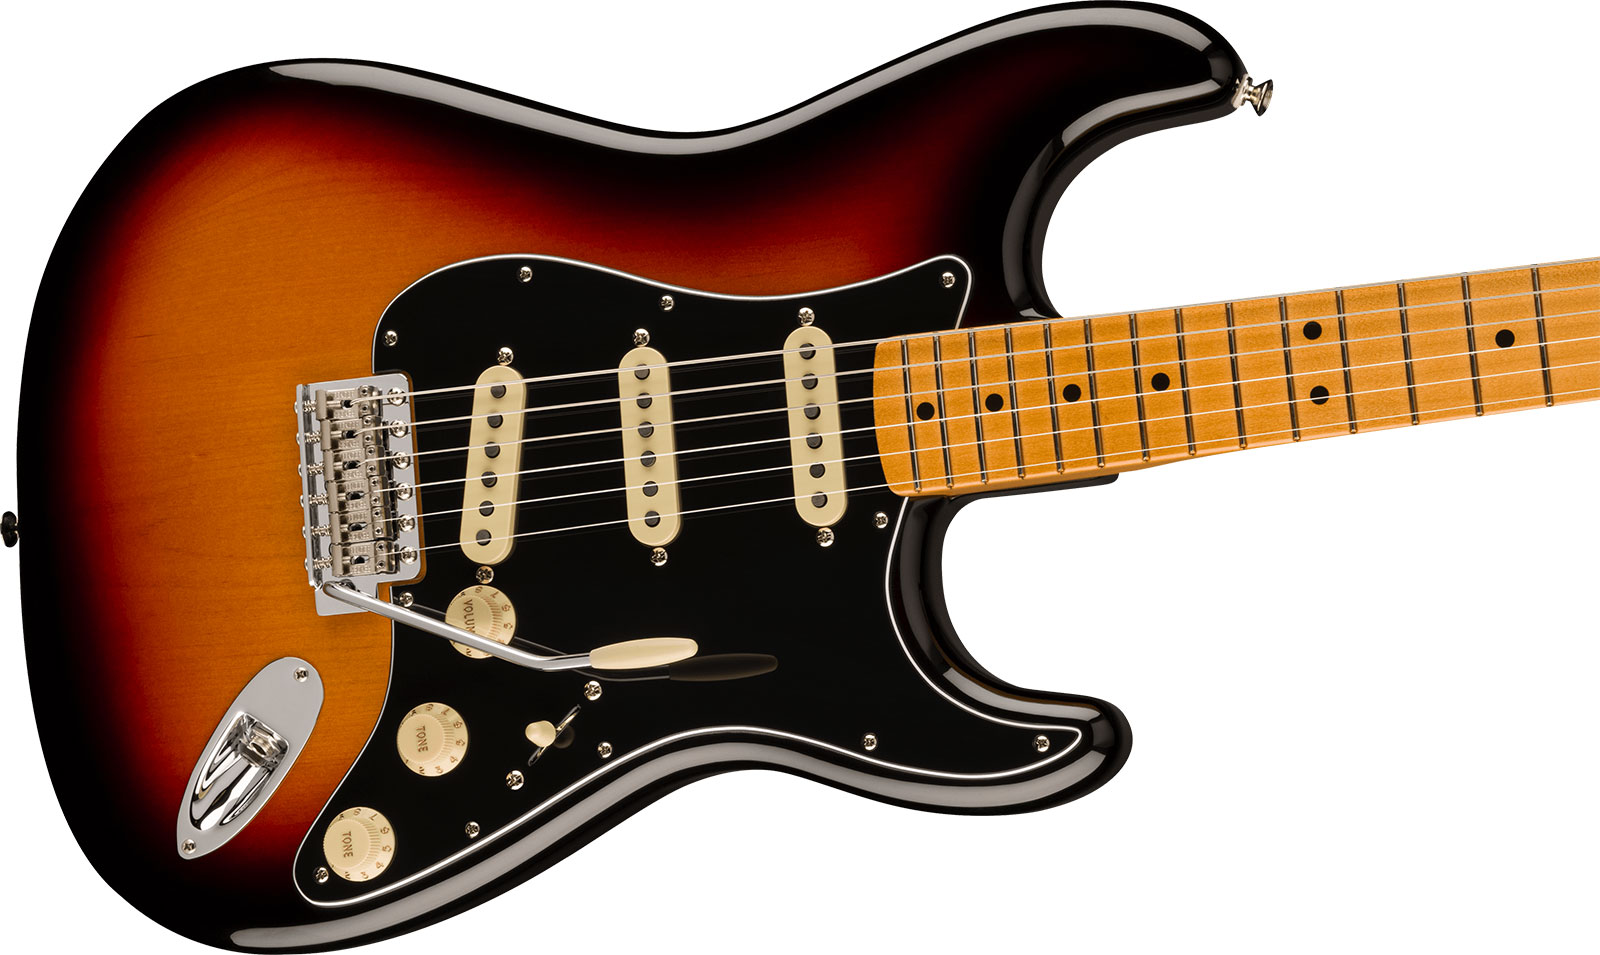 Fender Strat 70s Vintera 2 Mex 3s Trem Mn - 3-color Sunburst - E-Gitarre in Str-Form - Variation 2